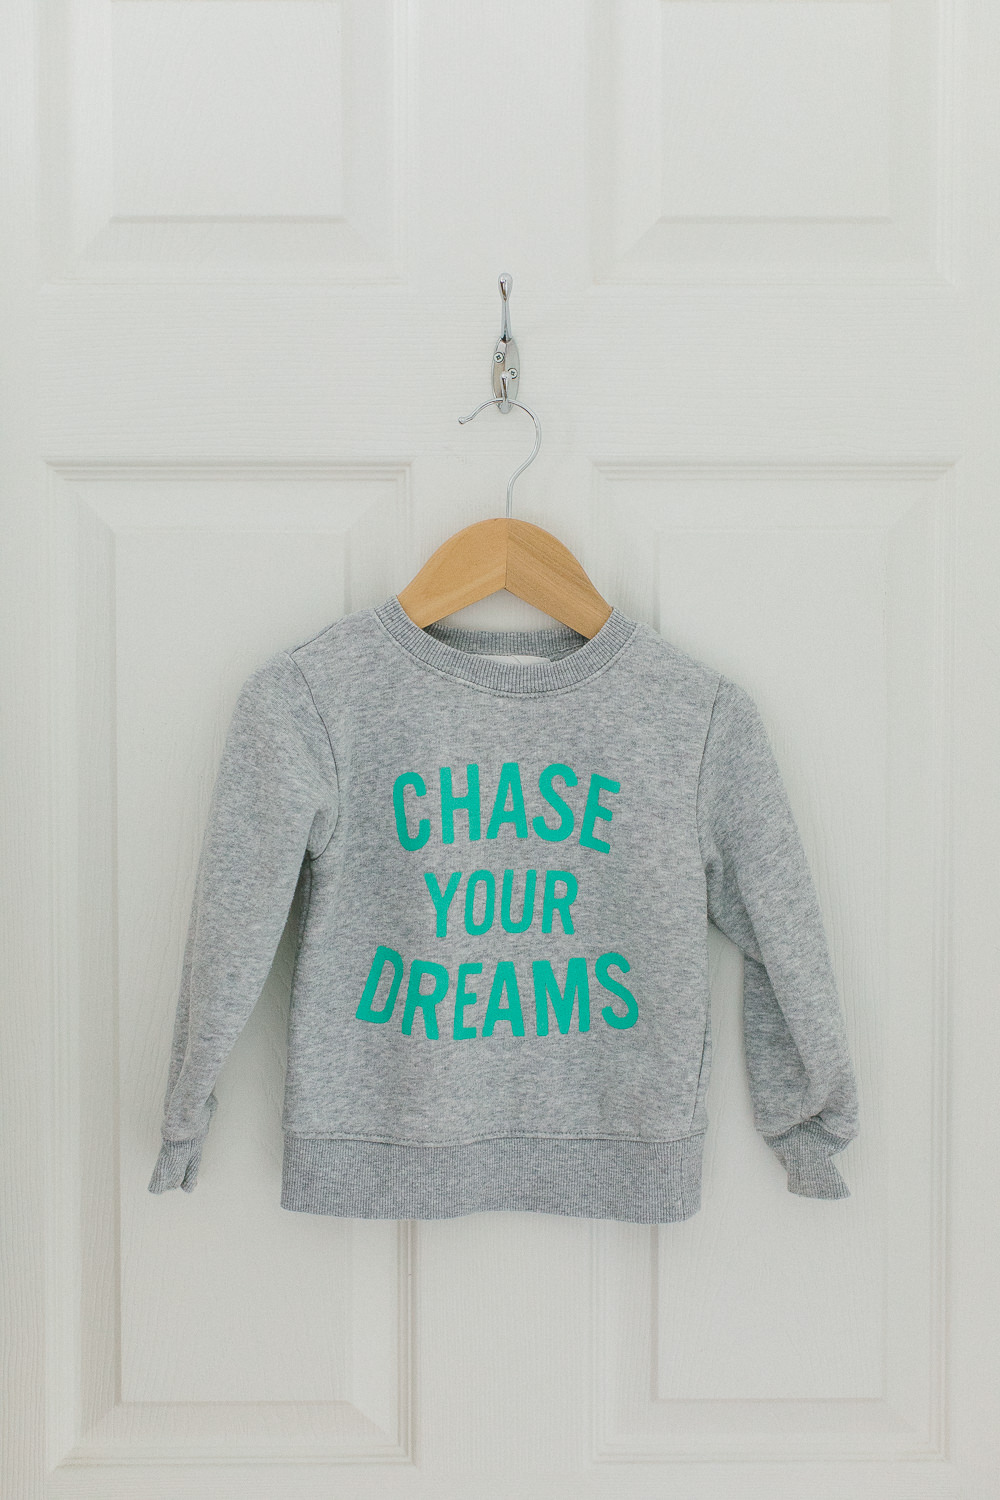 'Follow your dreams' jumper